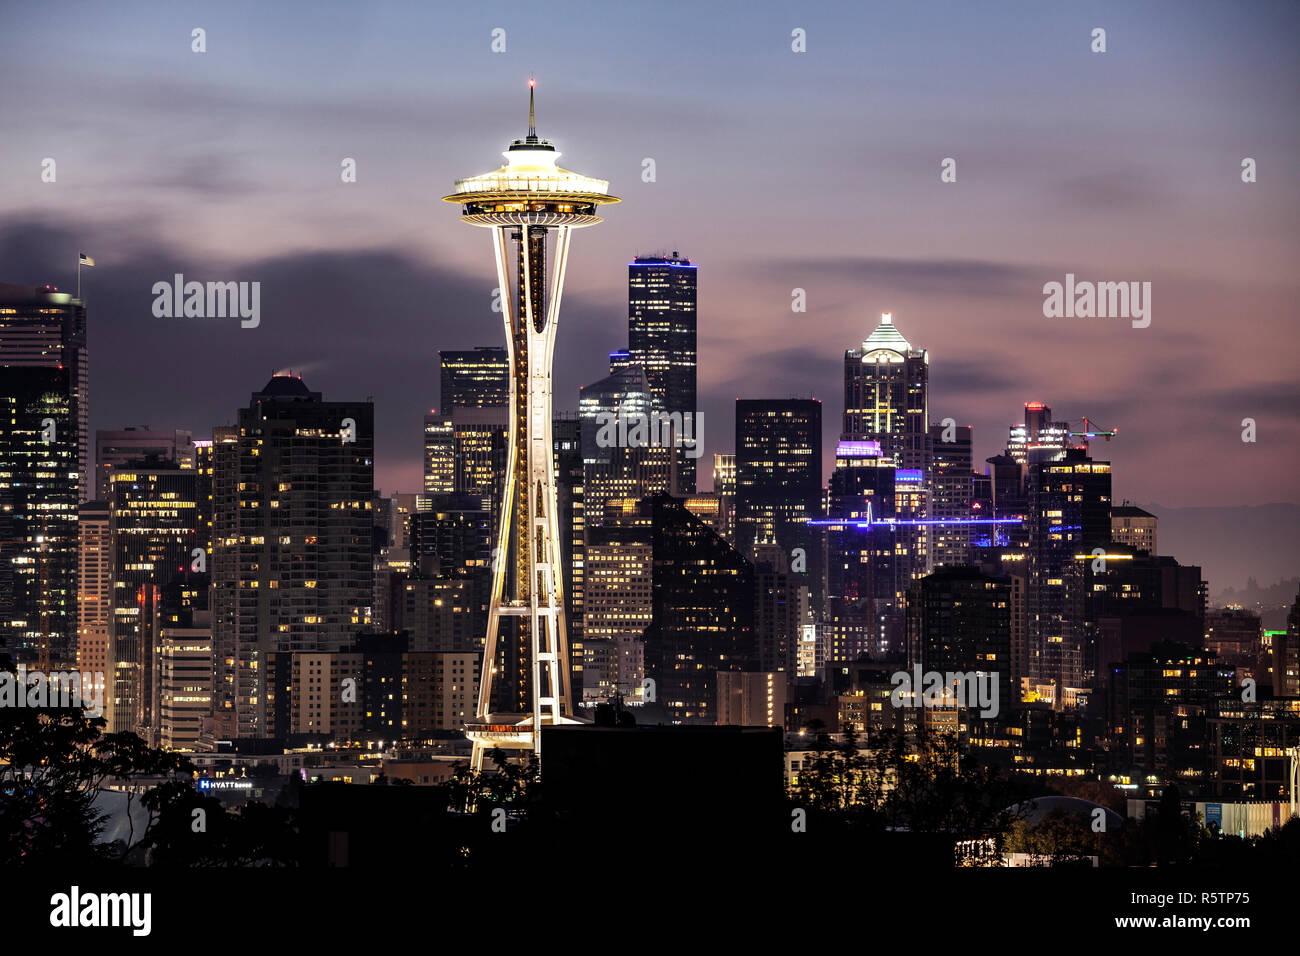 WA17022-00...WASHINGTON - La Space Needle de Seattle et les bâtiments vus de Kerry Park sur Queen Ann Hill. Banque D'Images